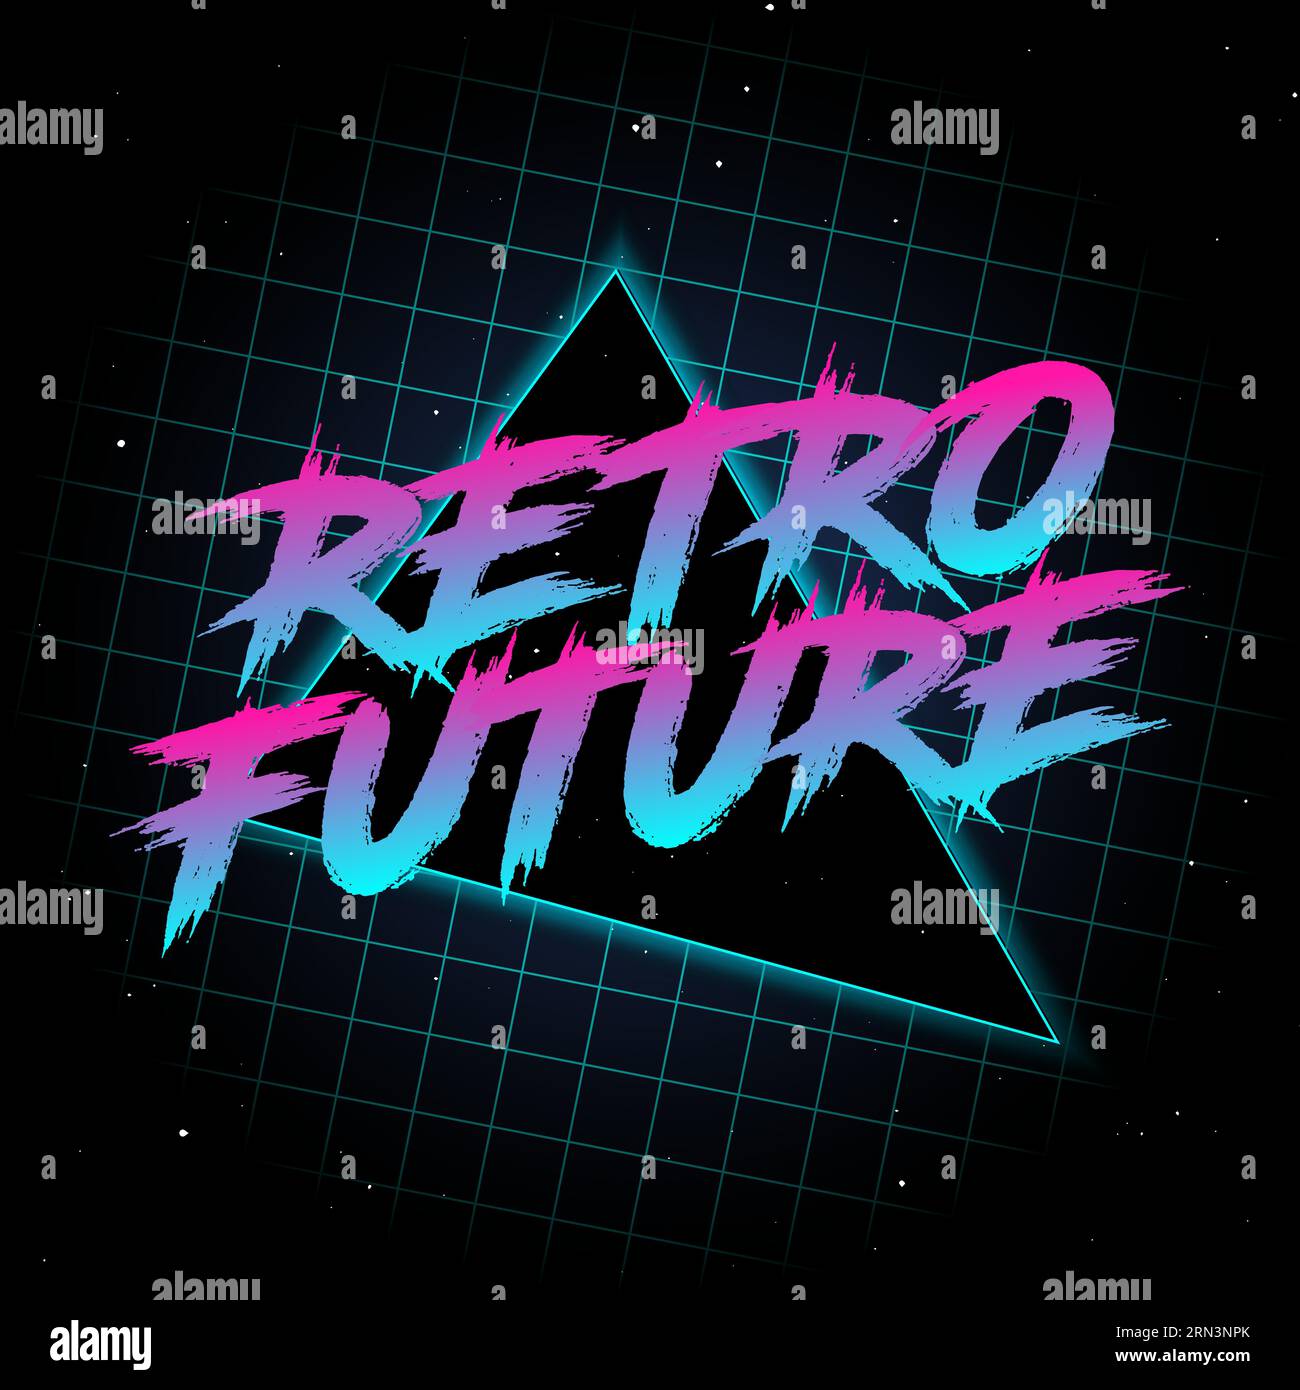 Retro Future Logo anni '80 stile Vector Art Grafica vintage Old School. immagine astratta di 90 sec. Design alla moda con griglia. Sfondo per banner, volantino Illustrazione Vettoriale